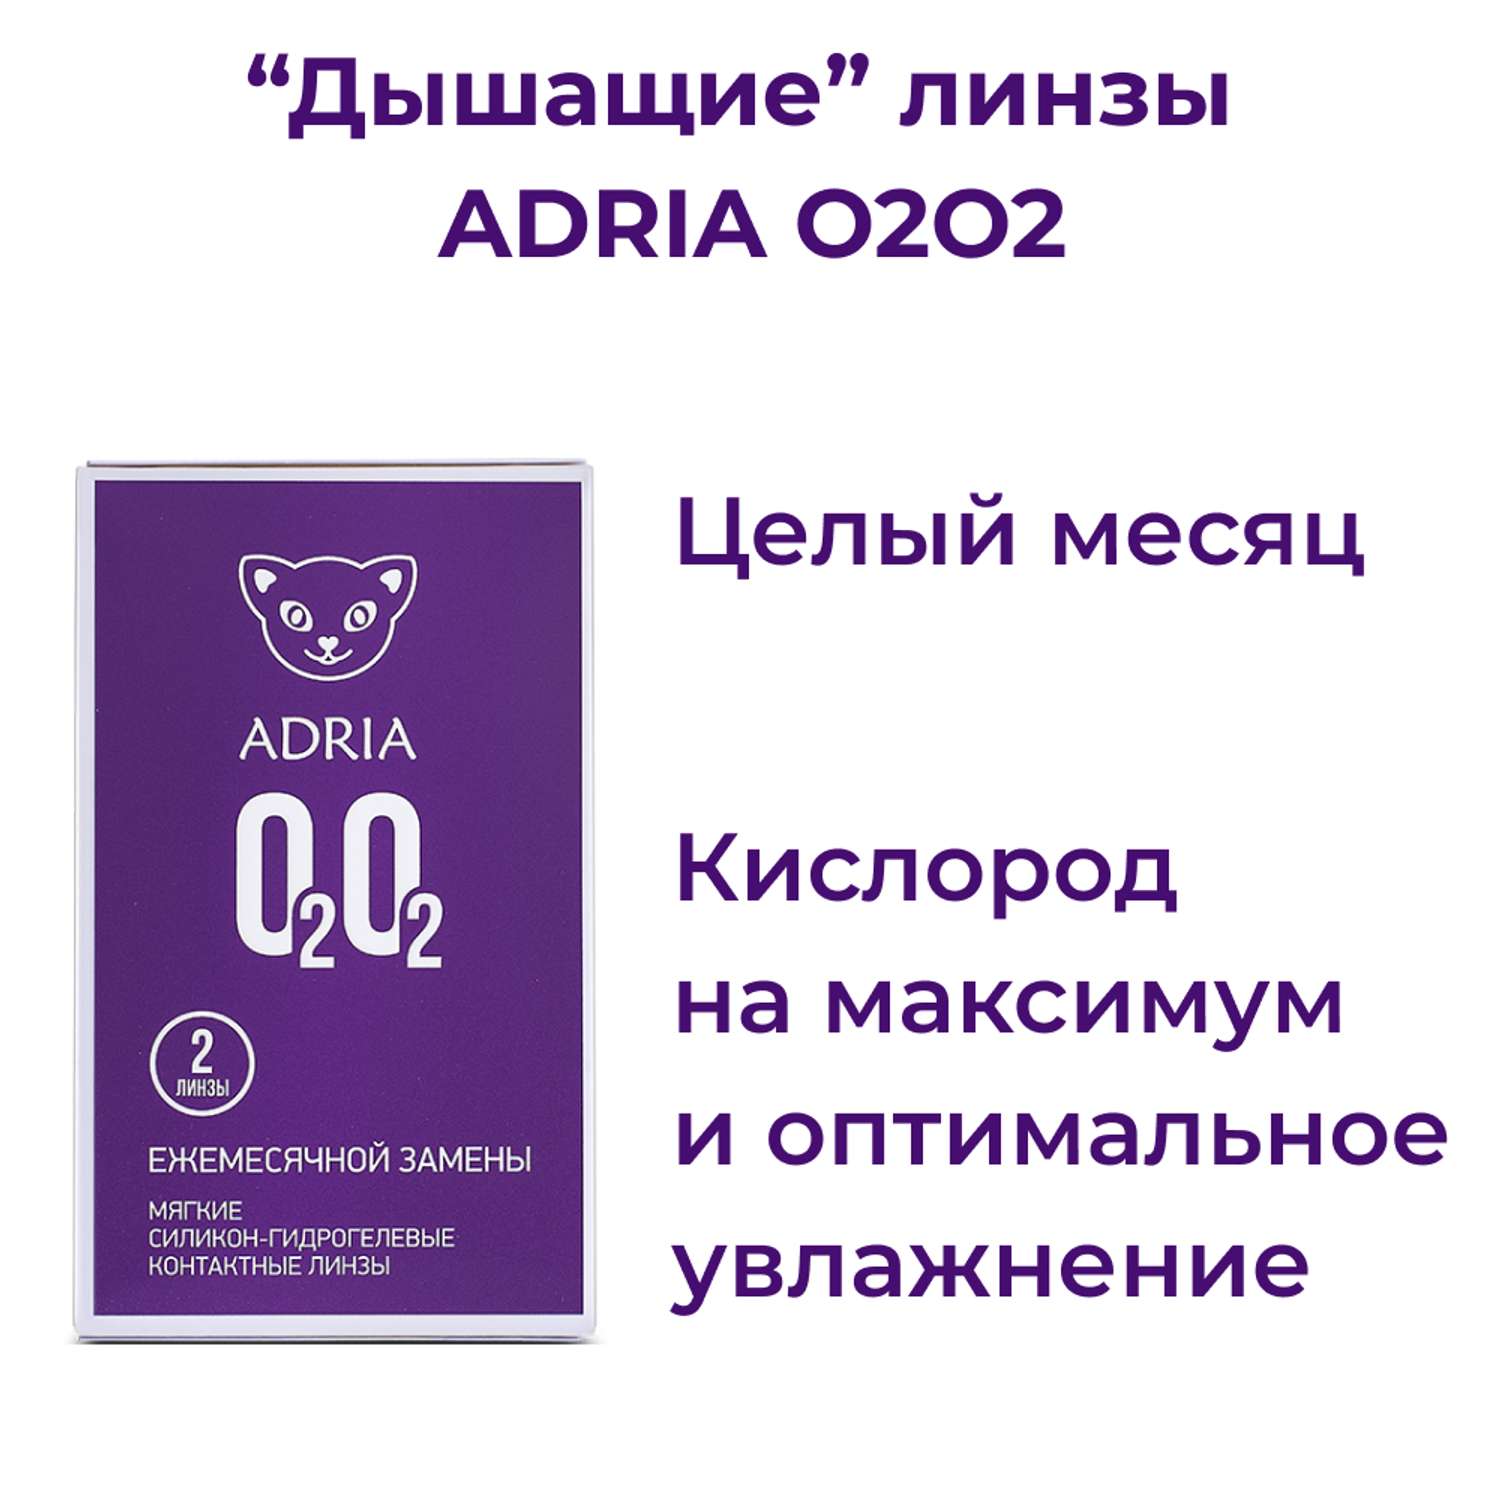 Контактные линзы ADRIA O2O2 2 линзы R 8.6 -4.75 - фото 2